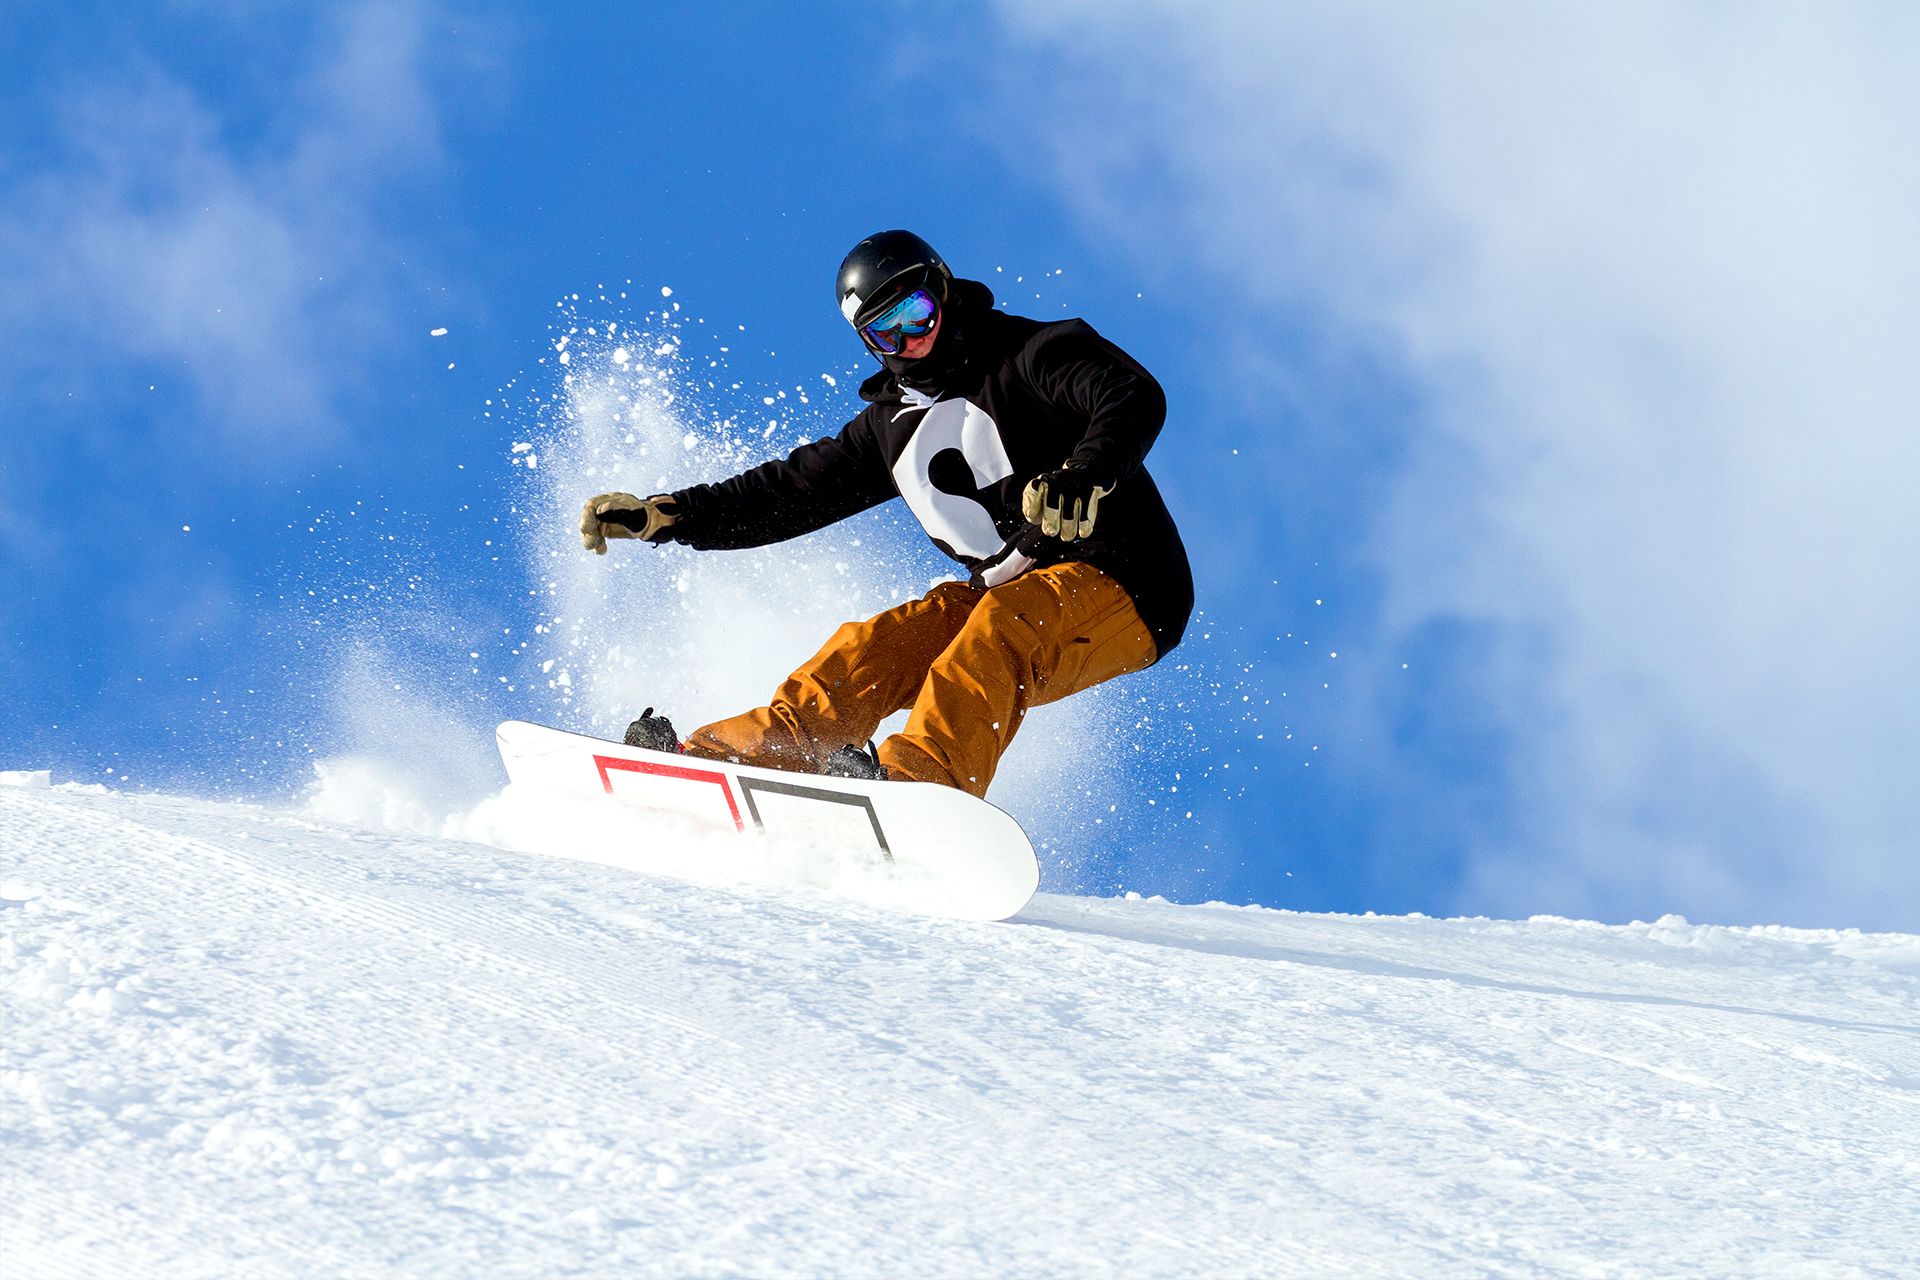 Snowboard-Abenteuer in der Skihalle Snowtropolis Senftenberg!